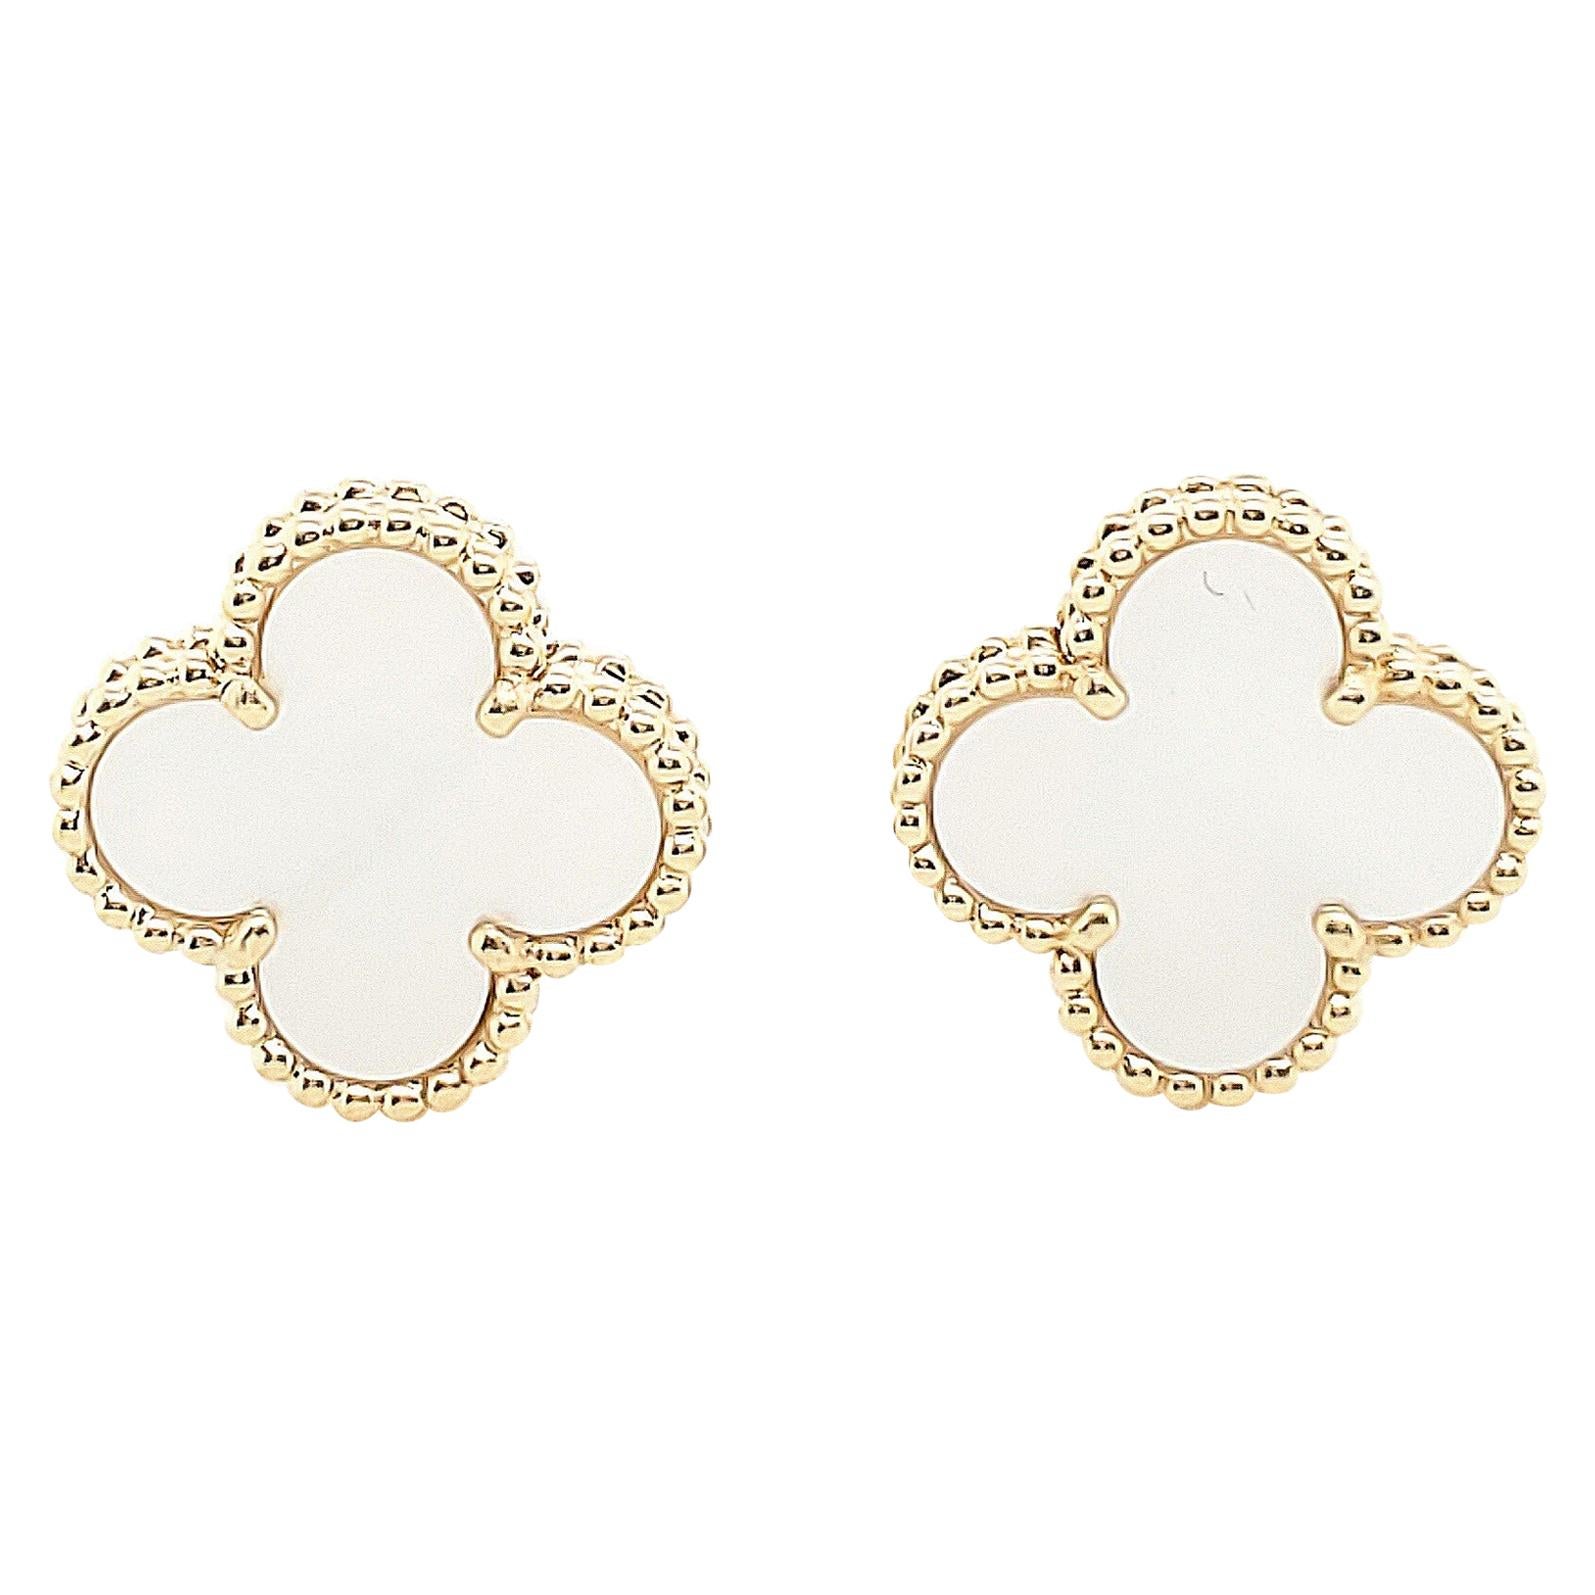 Van Cleef & Arpels Alhambra Earrings